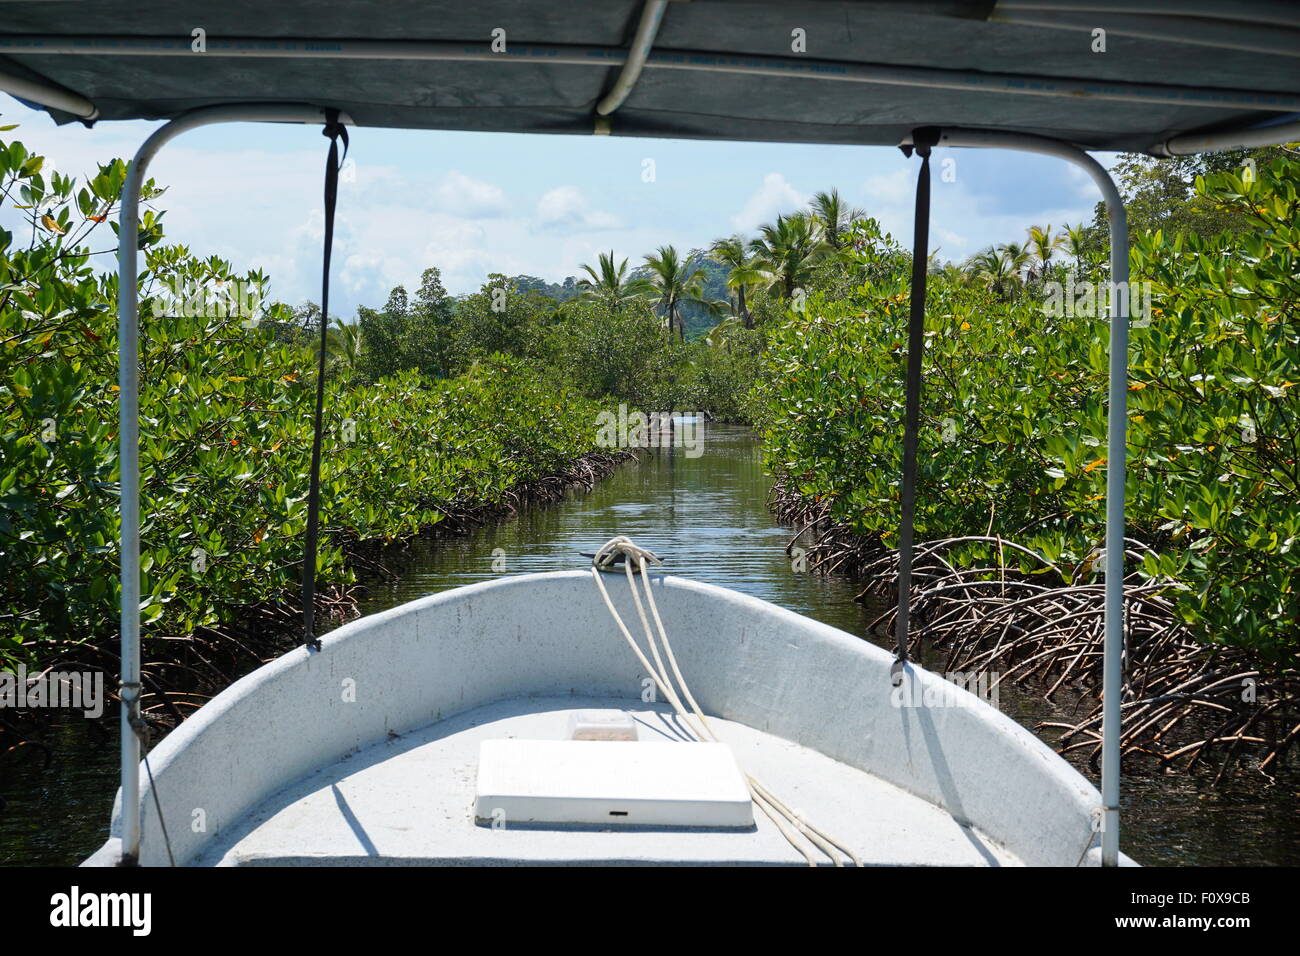 Imbarcazione attraverso un piccolo taglio nelle mangrovie, arcipelago di Bocas del Toro, Mar dei Caraibi, Panama America Centrale Foto Stock